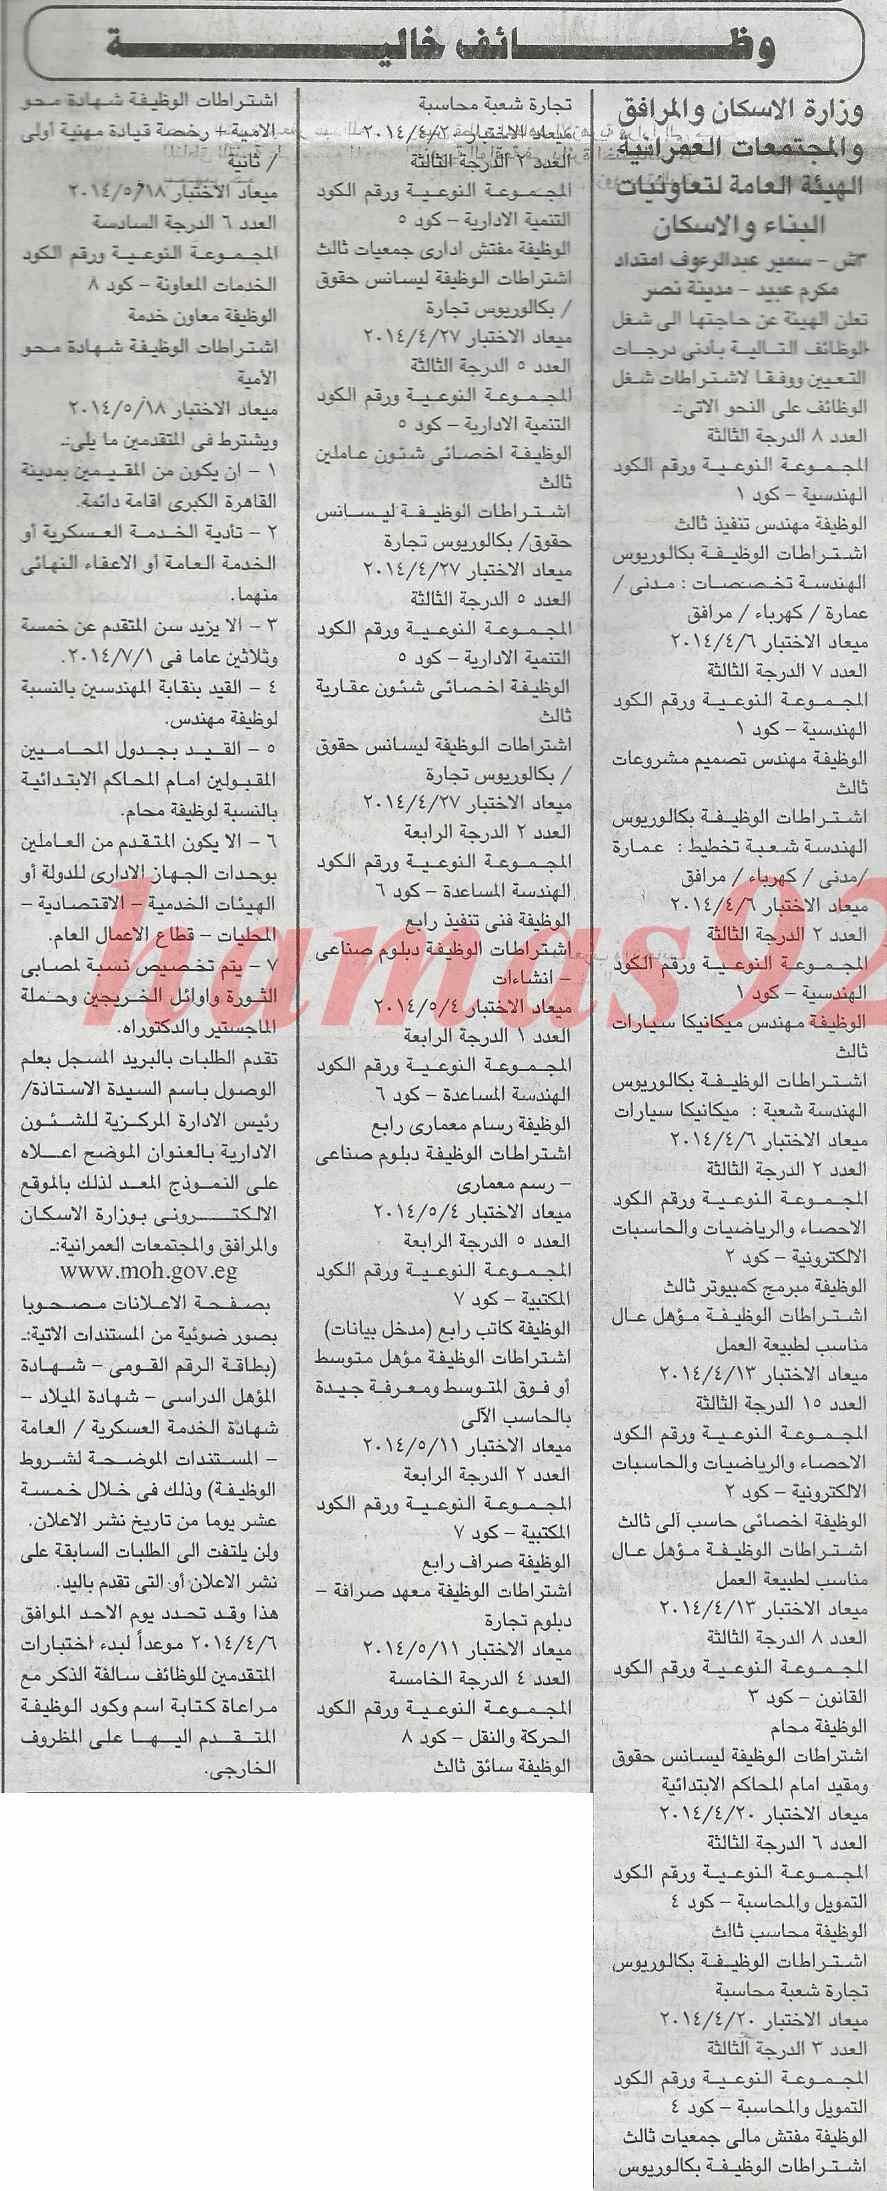 وظائف جريدة الجمهورية المصرية اليوم الخميس 13-2-2014